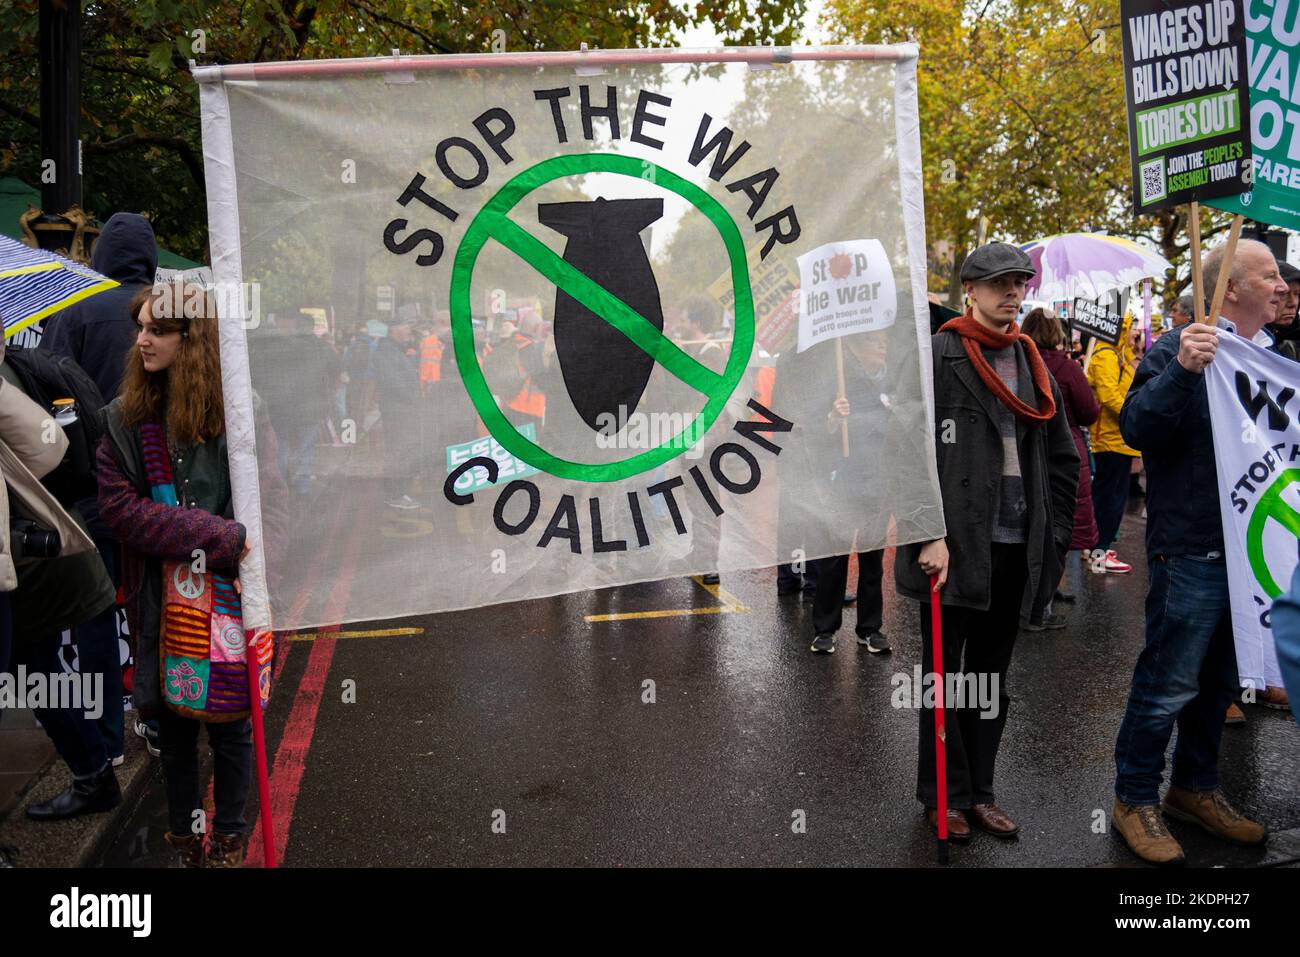 Arrêter la bannière de la Coalition de guerre lors d'une manifestation à Londres contre les mesures d'austérité du gouvernement conservateur, appelant à des élections générales Banque D'Images